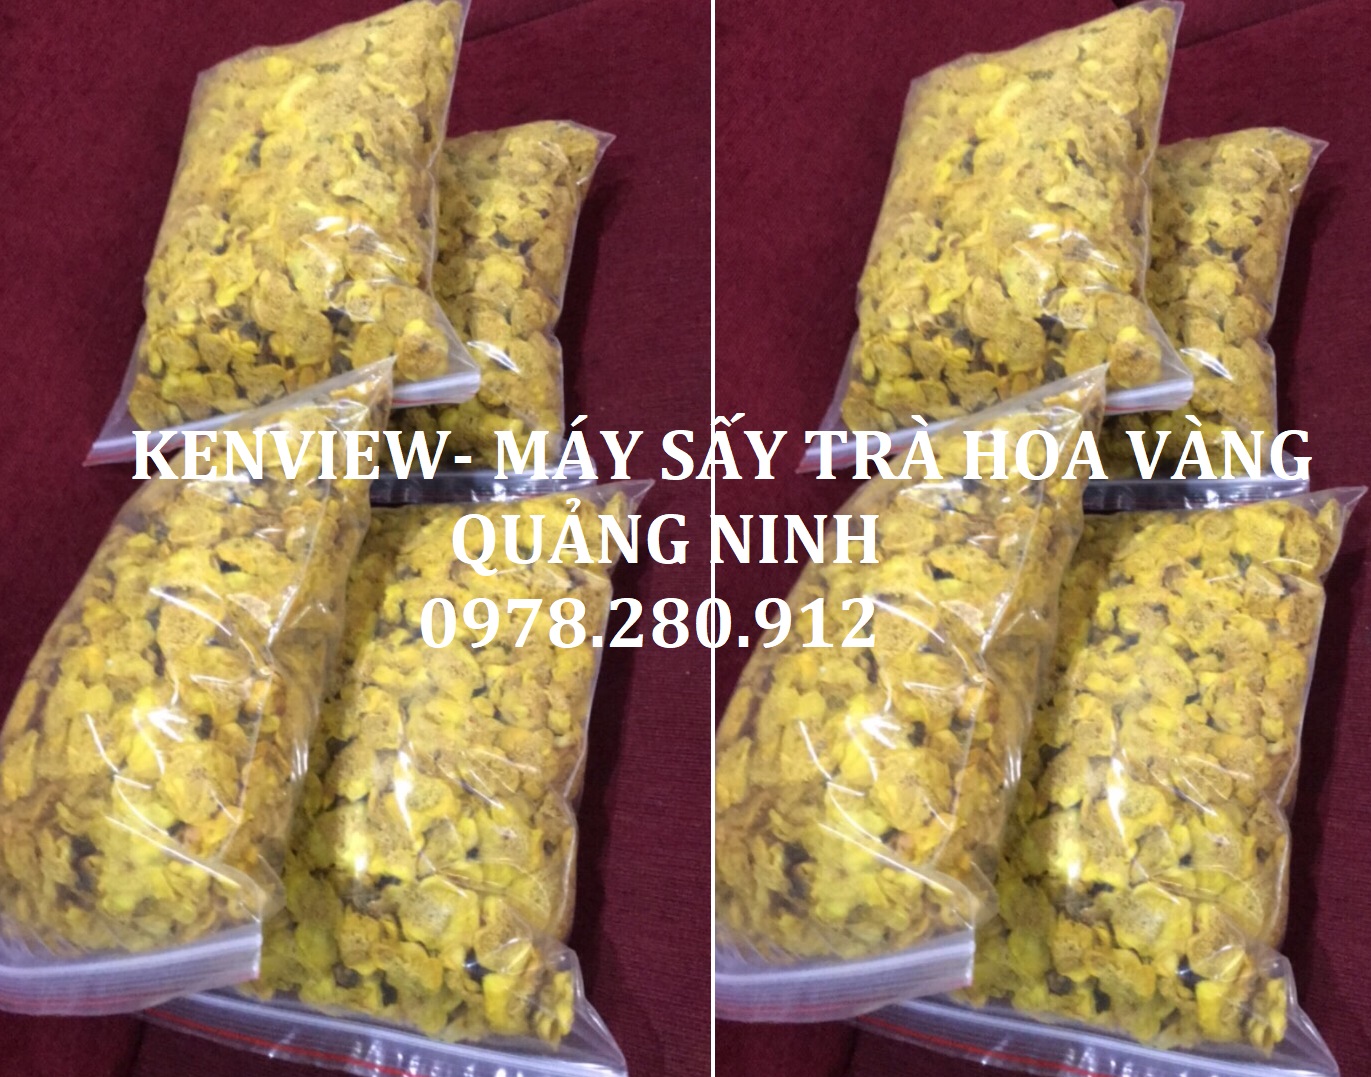 Kenview cung cấp máy sấy dược liệu, sấy hoa trà vàng tại Quảng Ninh.